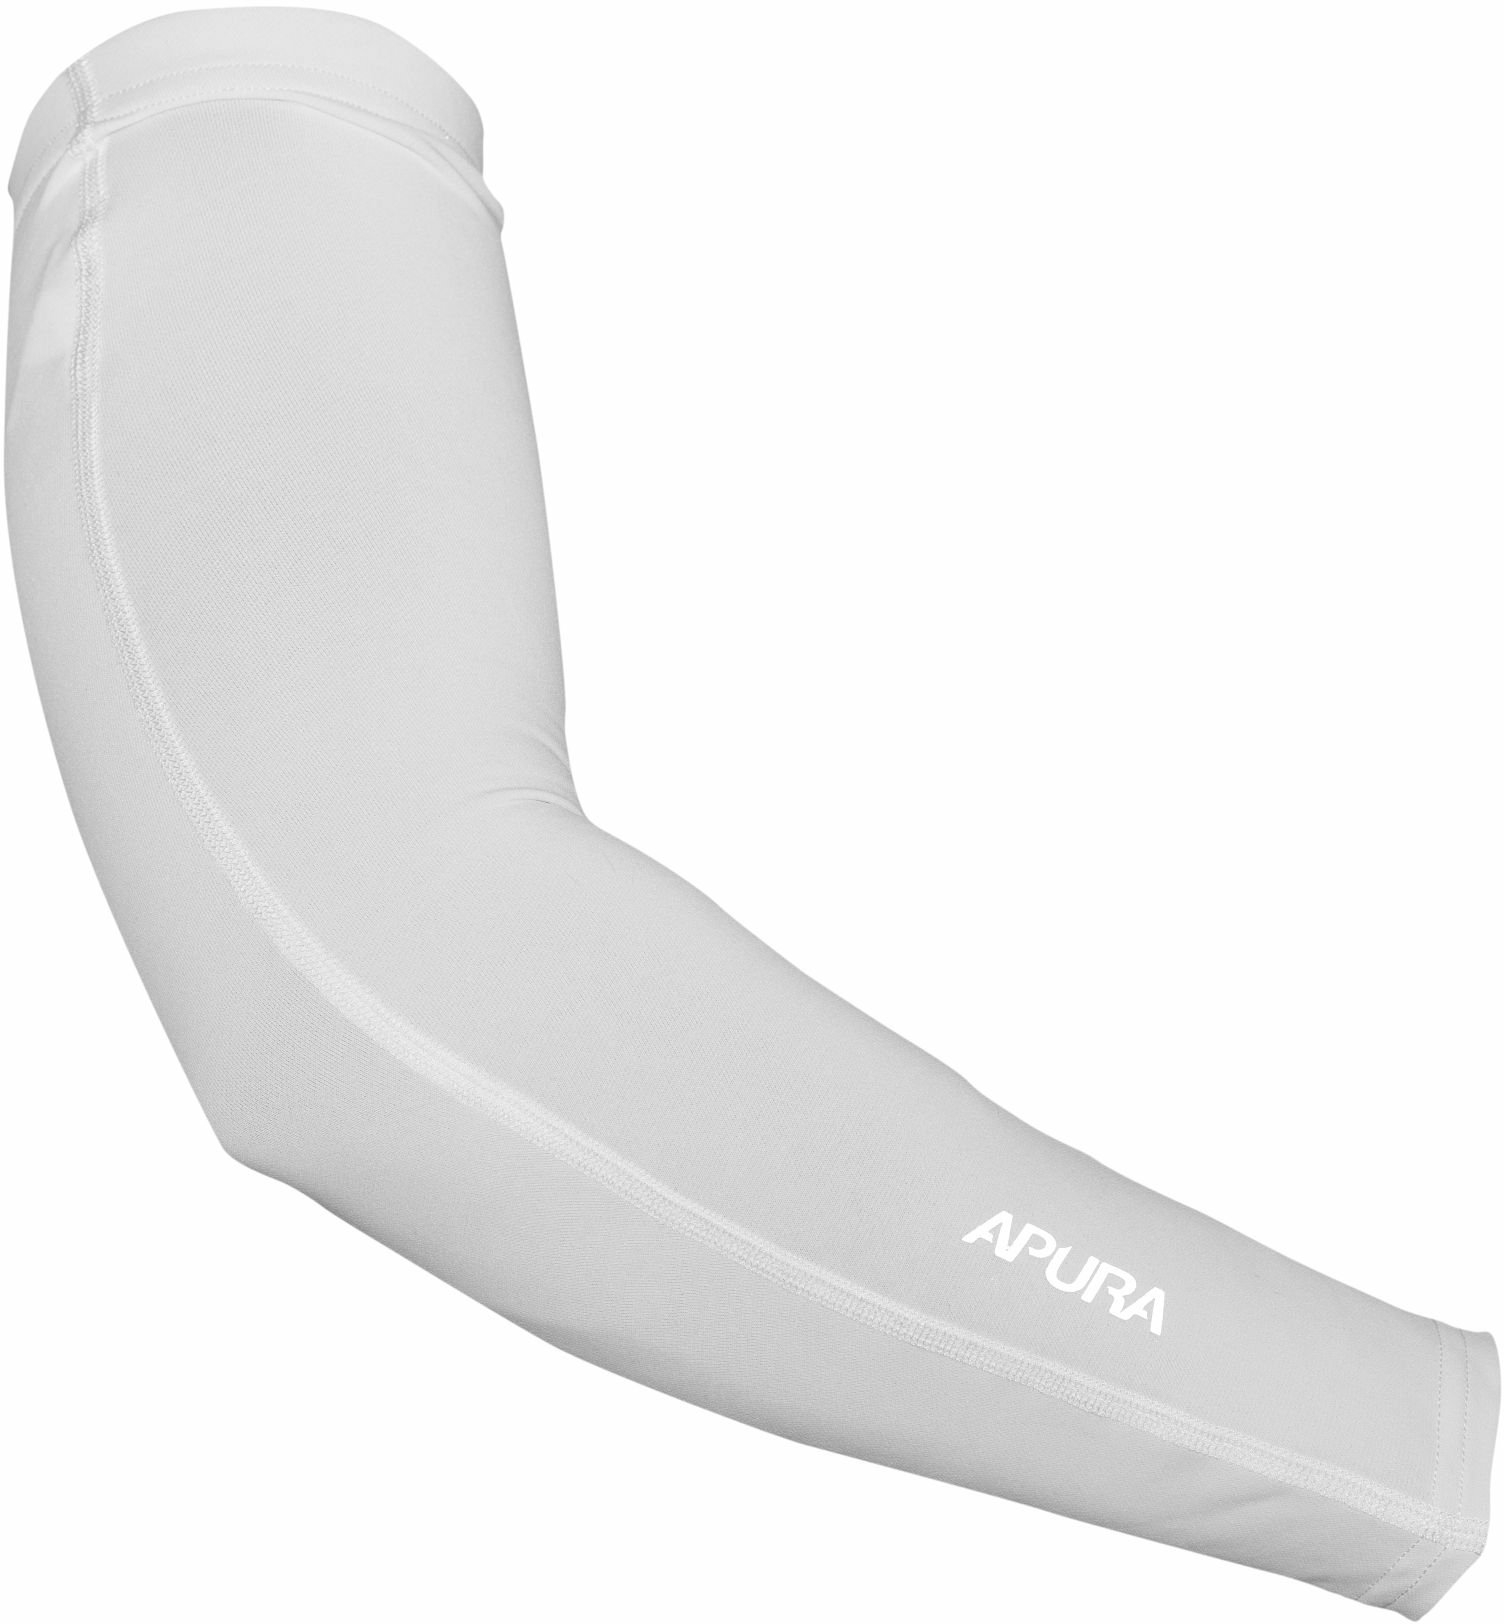 Apura Damen/Herren Armlinge UV Shield M white